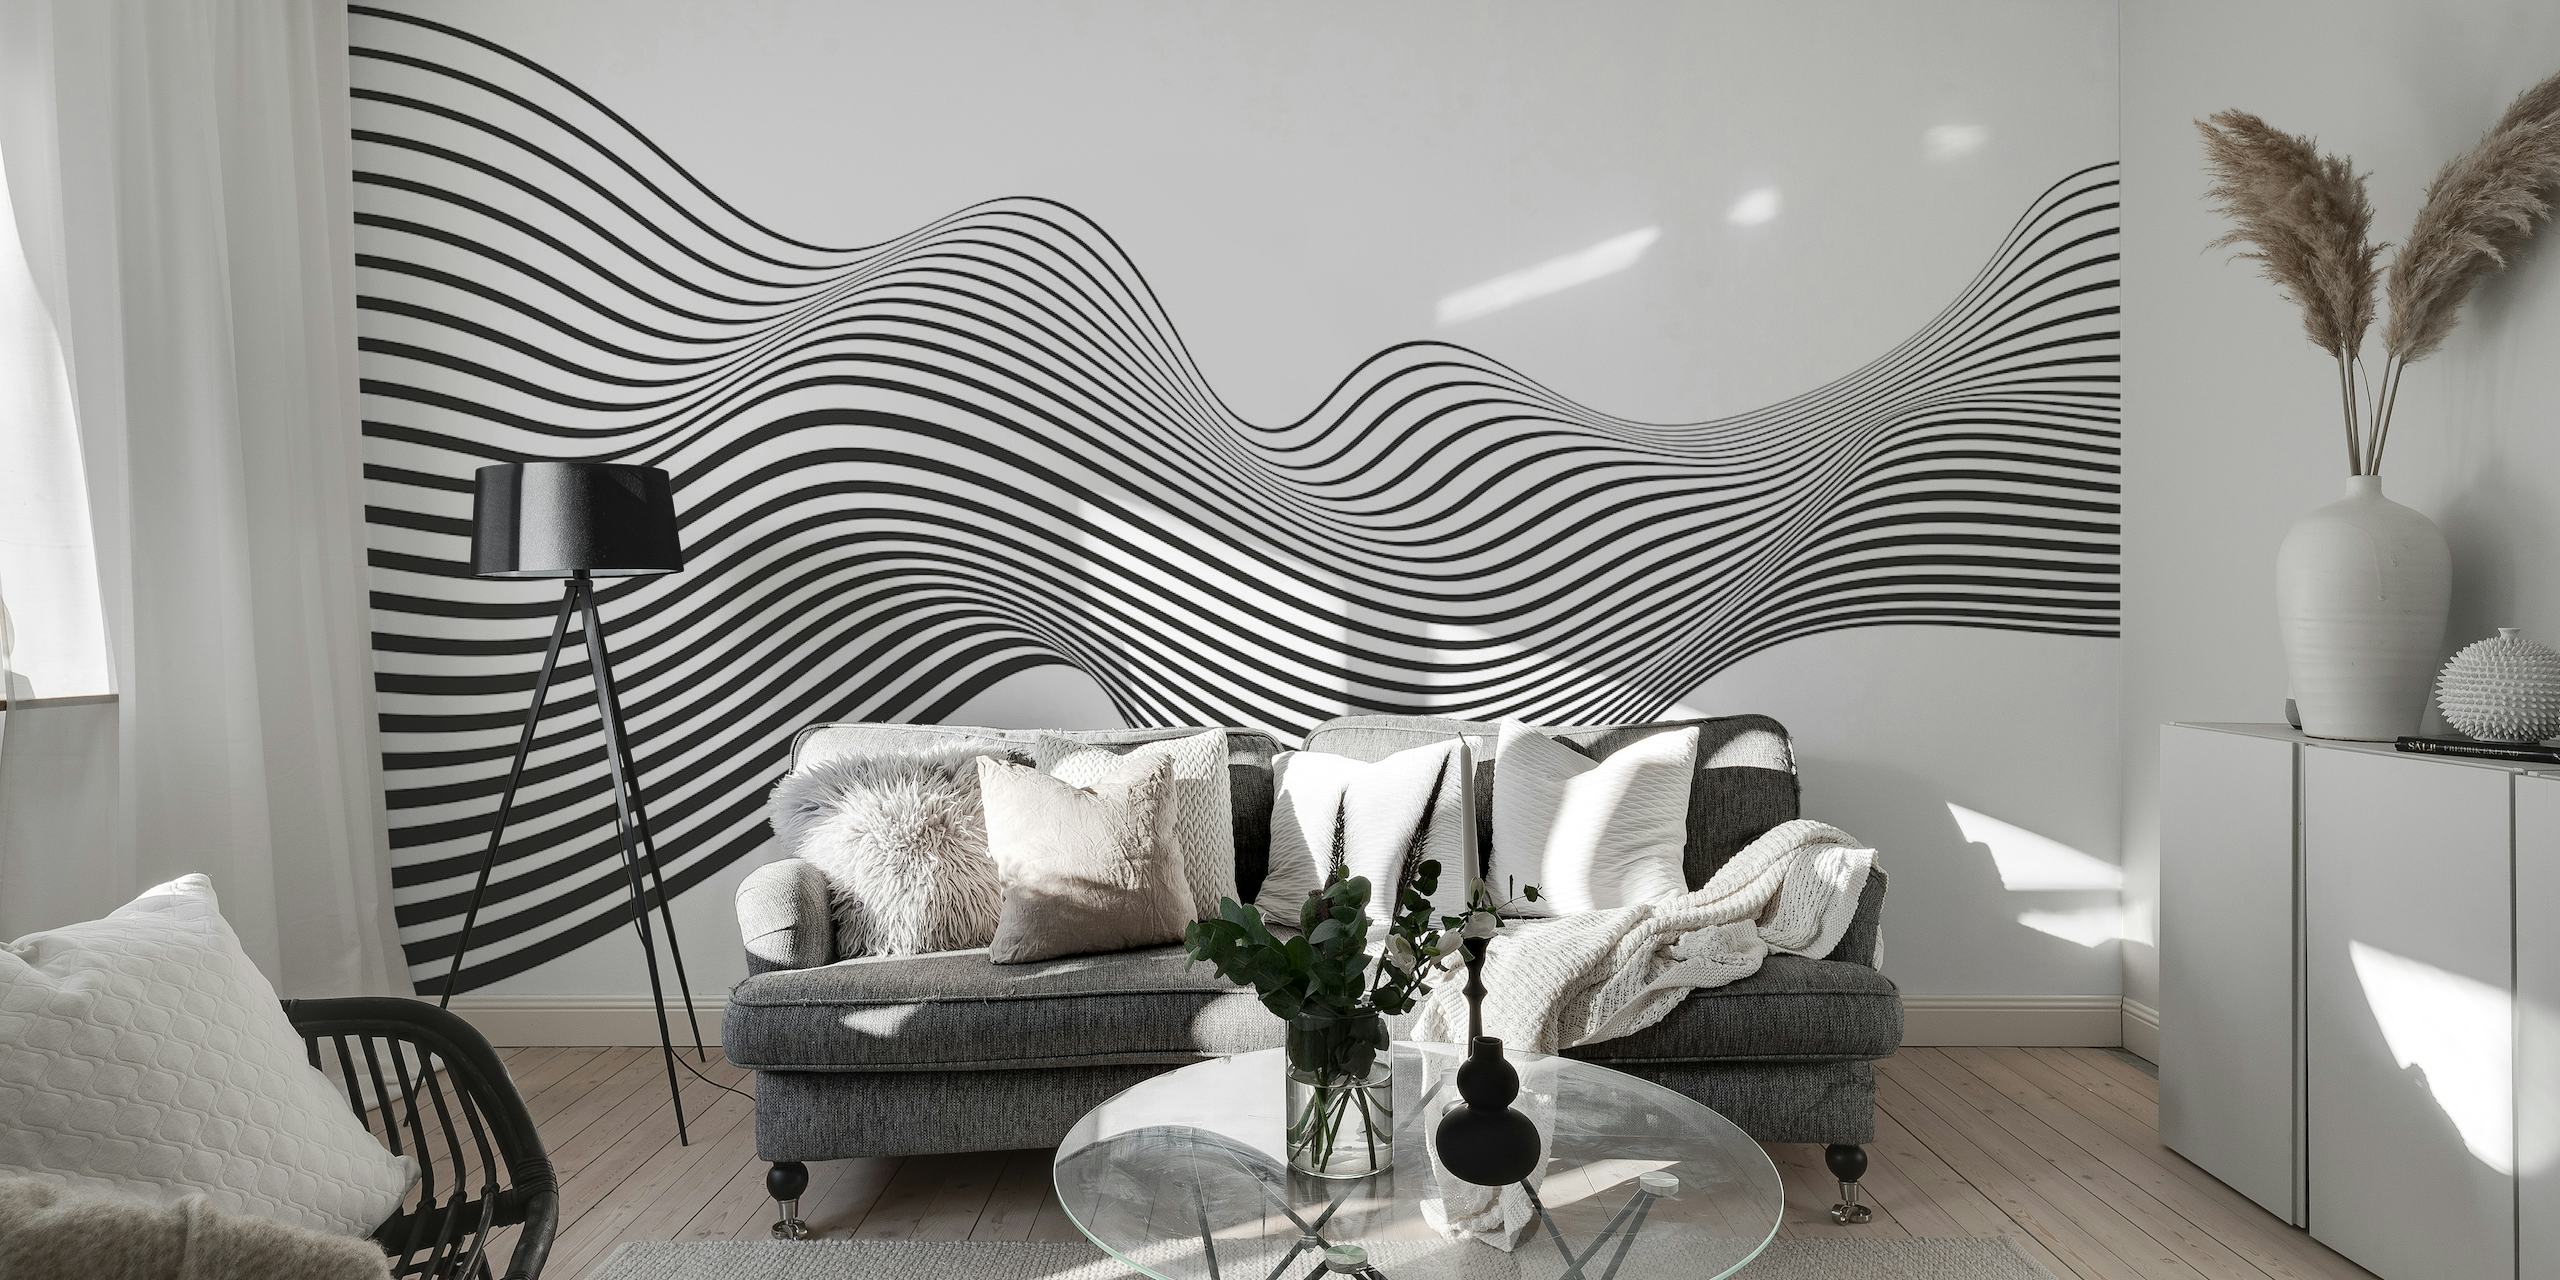 Elegante schwarz-weiße Fototapete mit Wellenmuster für ein modernes Interieur